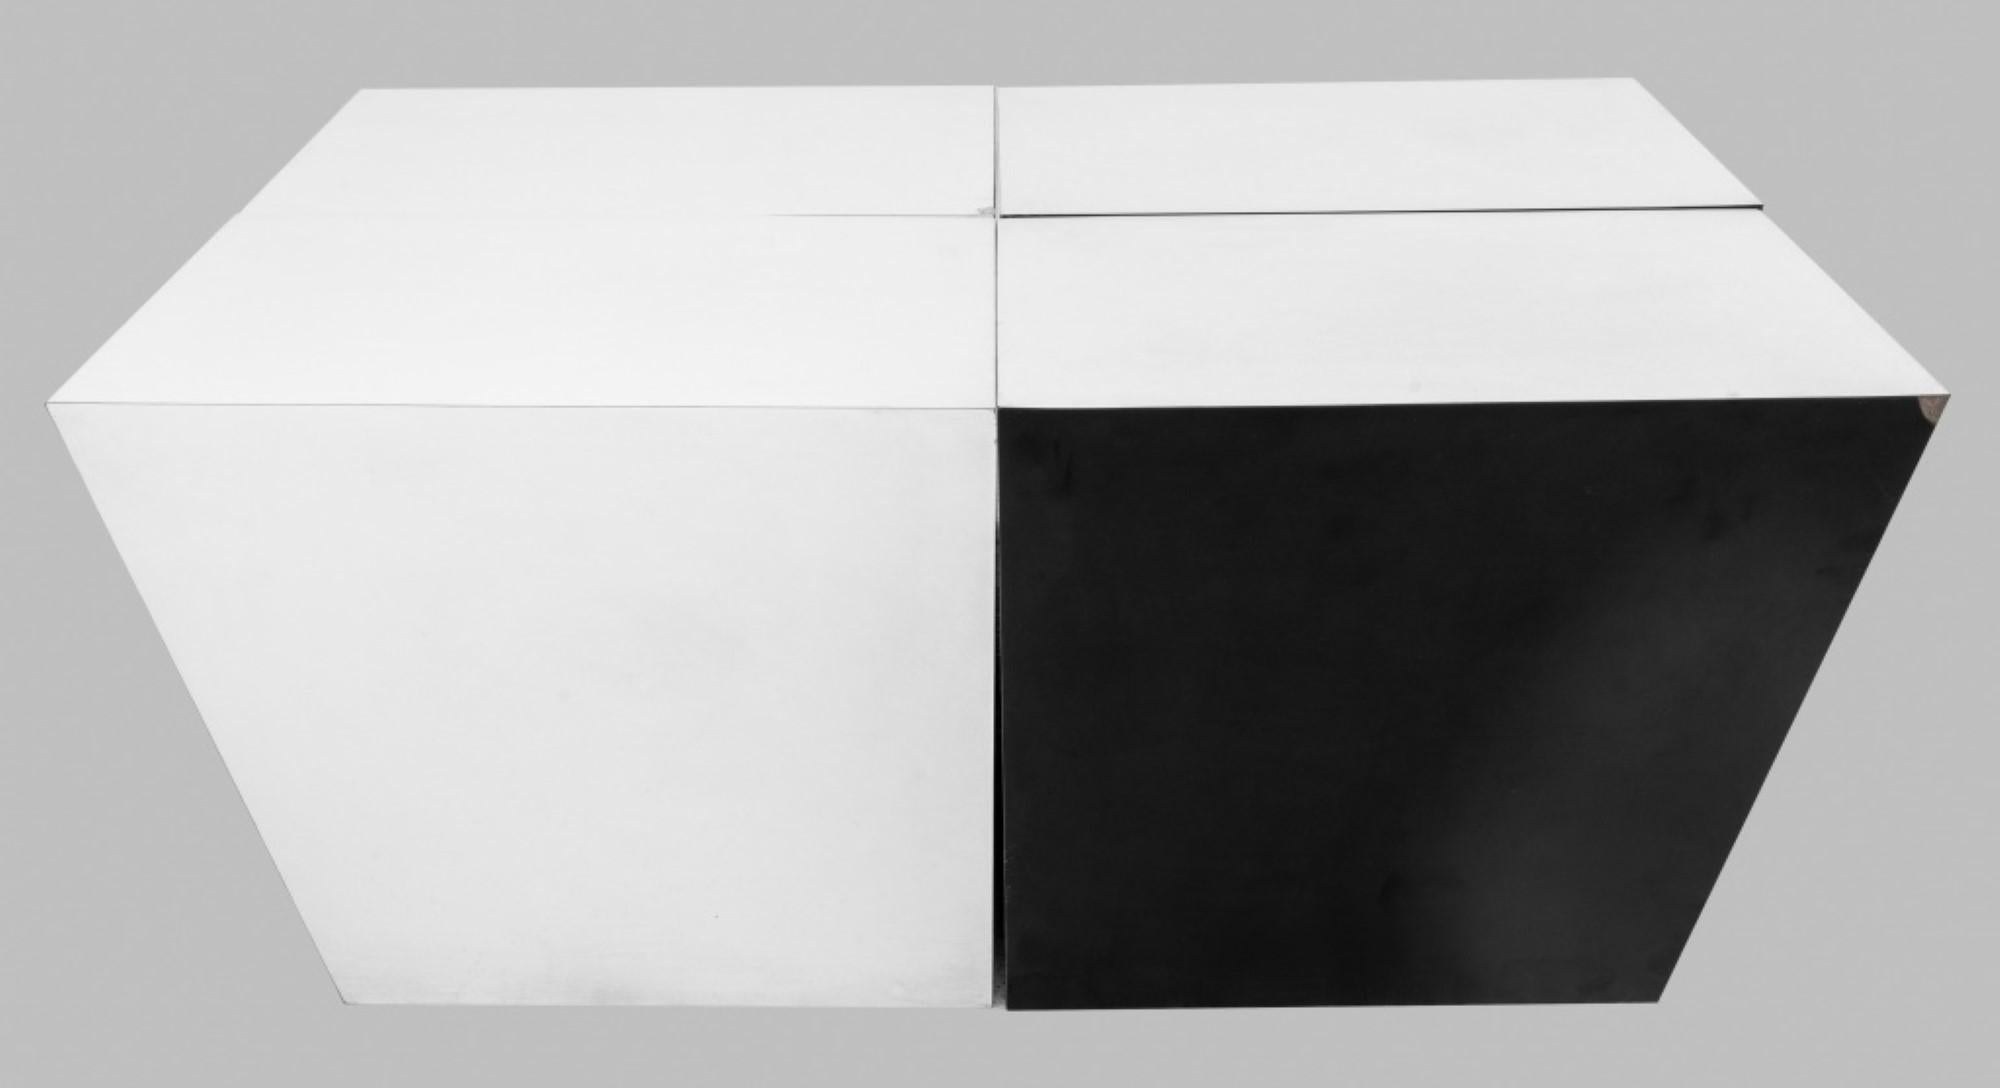 Groupe de quatre tables d'extrémité ou tables d'appoint postmodernes en bois laqué noir et blanc présentant différentes formes géométriques formant une table basse lorsqu'elles sont réunies.

Concessionnaire : S138XX